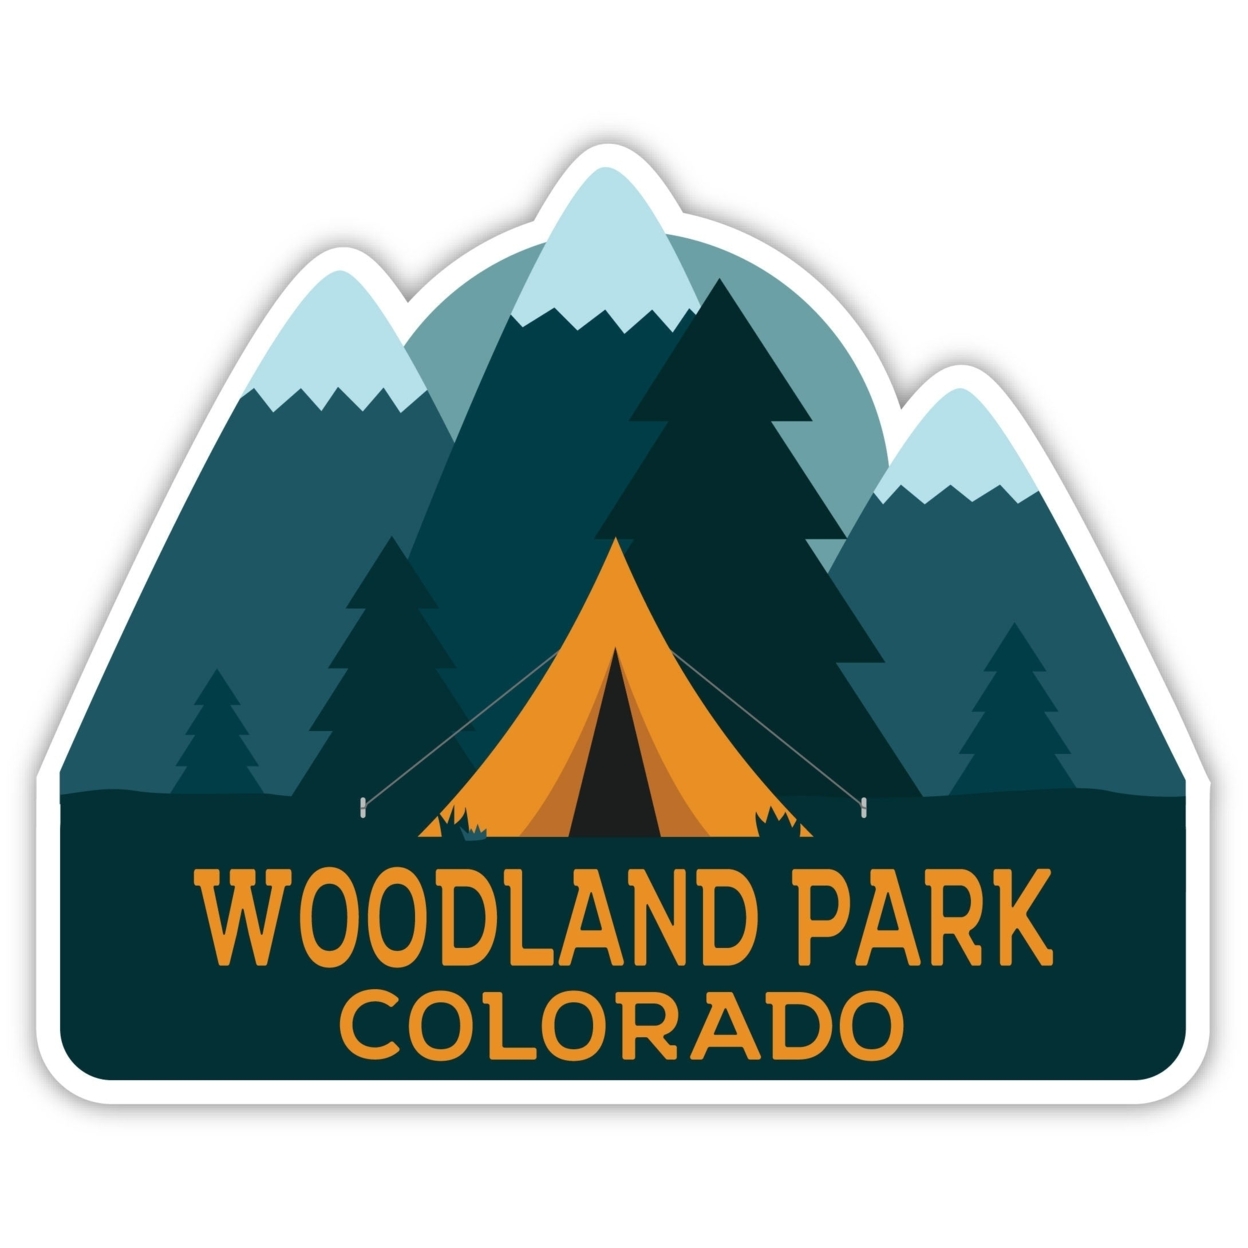 Woodland Park Colorado Souvenir Decorative Stickers (Choose Theme And Size) - Single Unit, 2-Inch, Tent